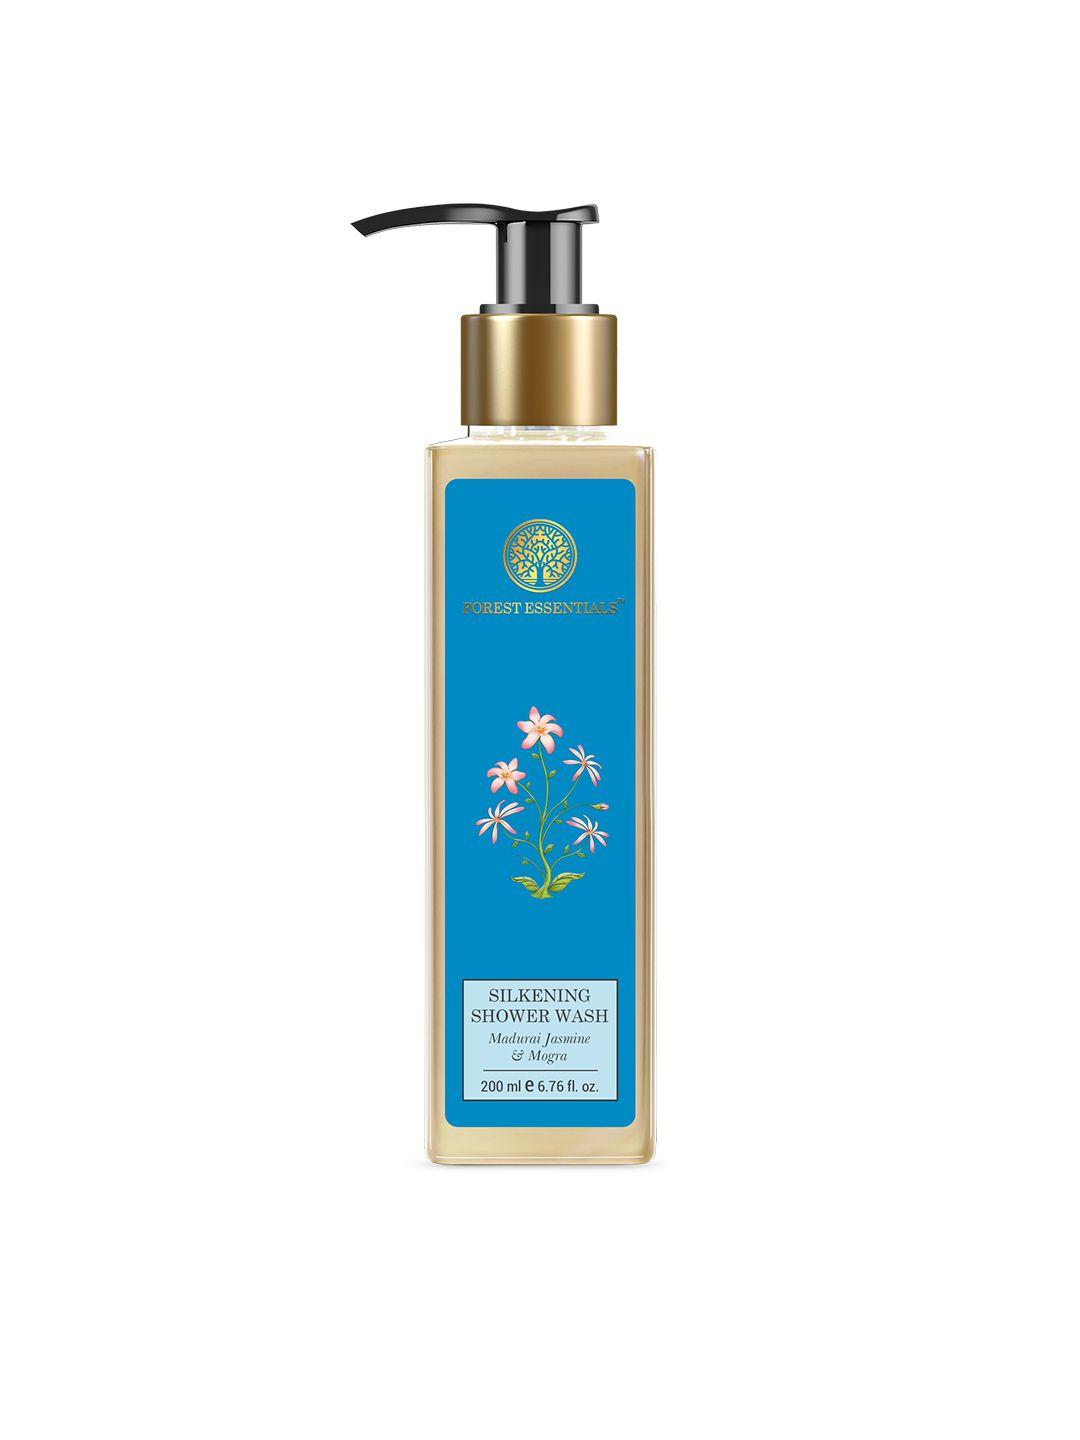 forest essentials silkening shower wash with madurai jasmine & mogra - 200 ml